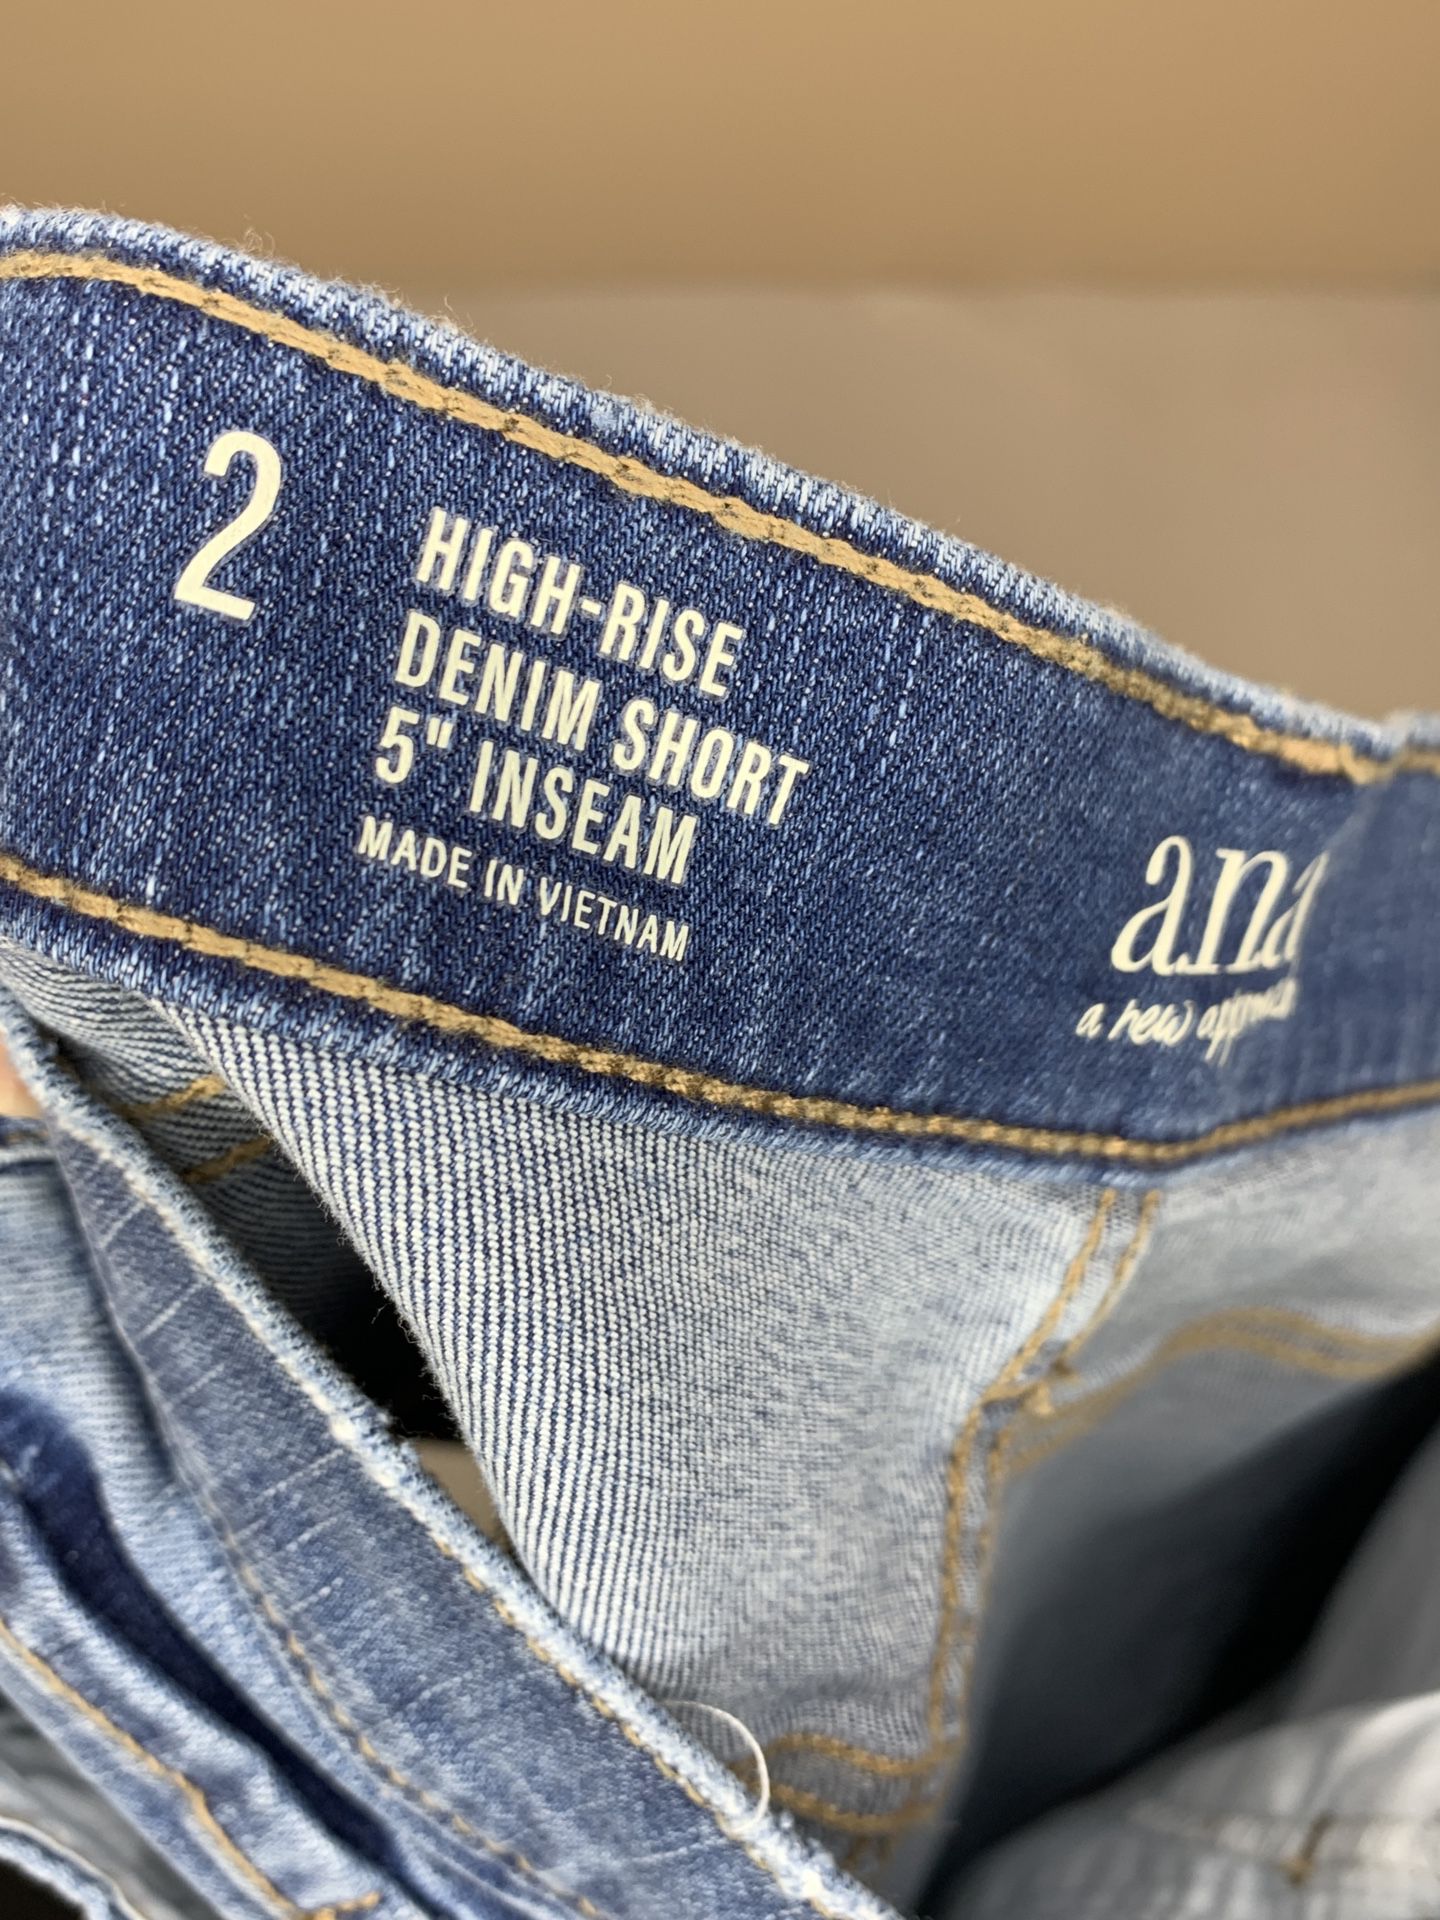 A.N.A. Jean Shorts Women's High-Rise  Size 2 Cuffed High Rise Blue Stretch Denim